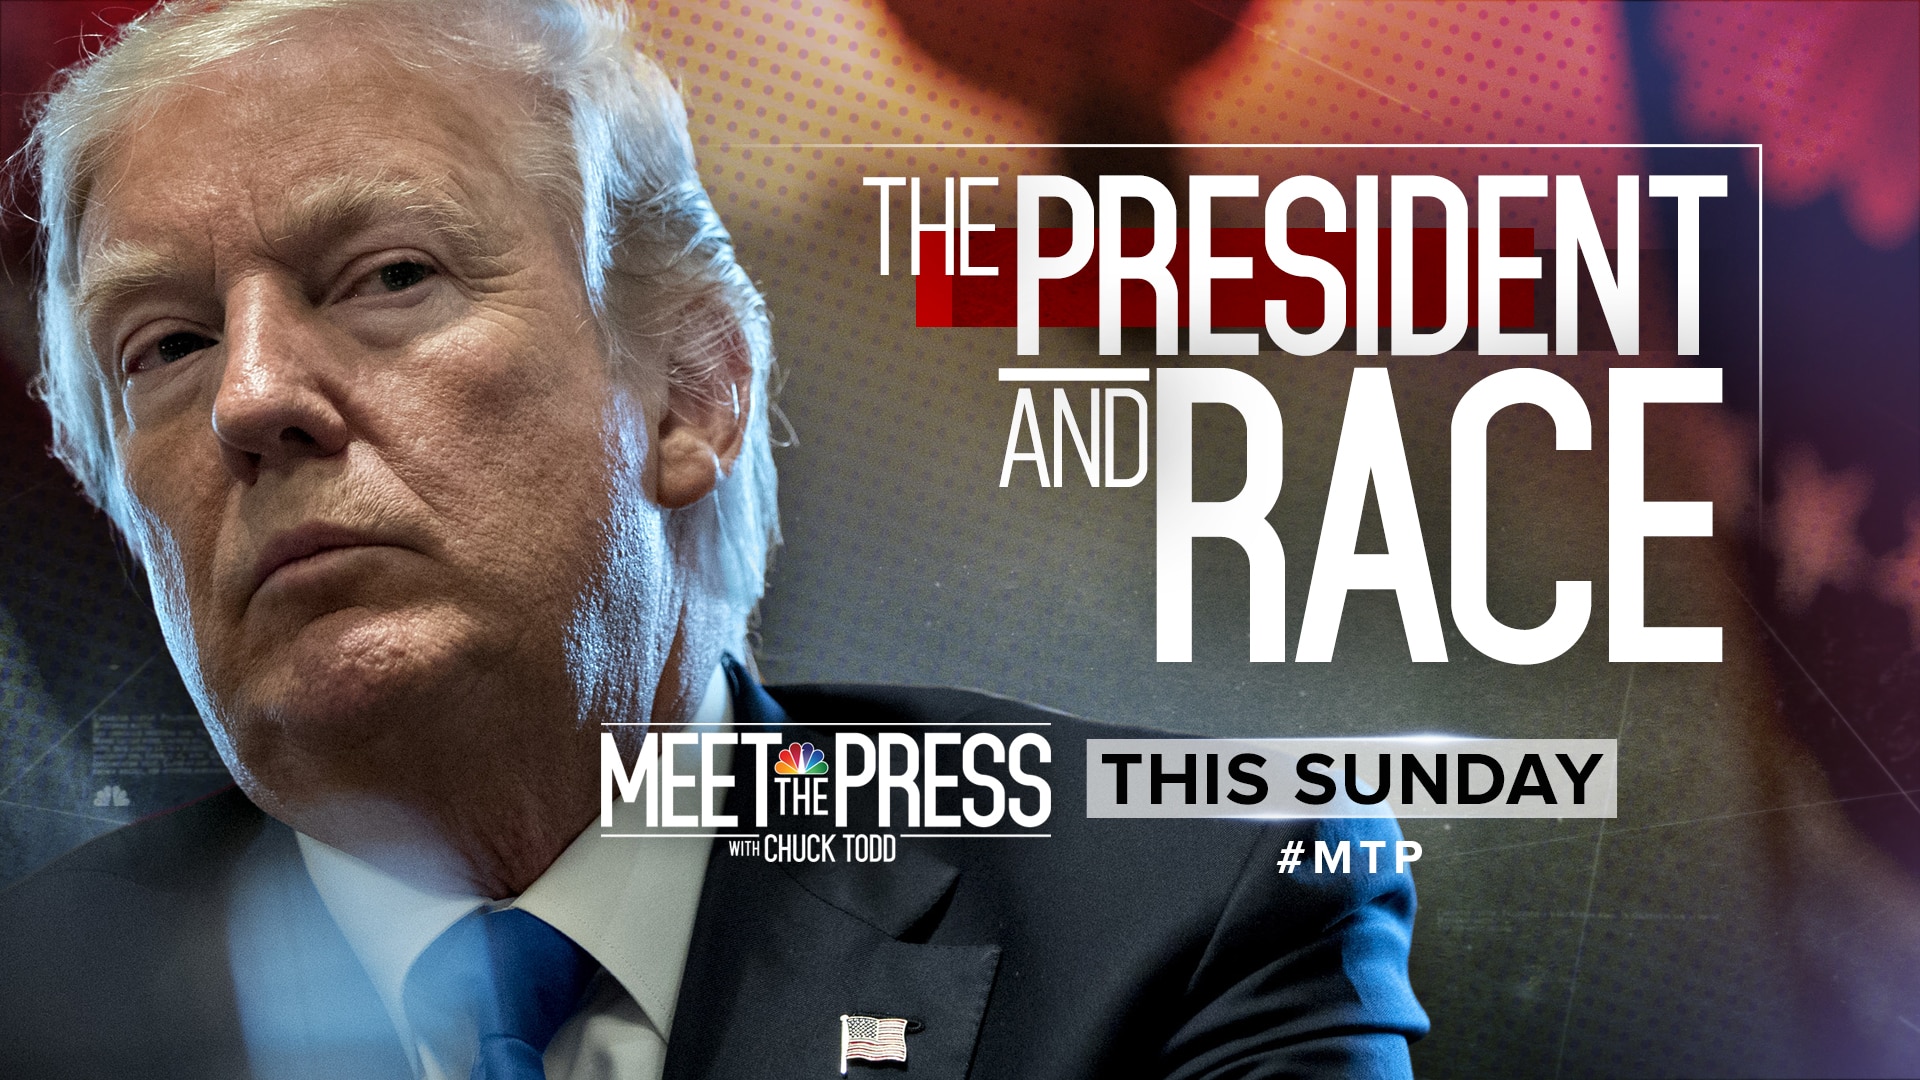 Watch Meet the Press Episode Meet the Press January 14, 2018